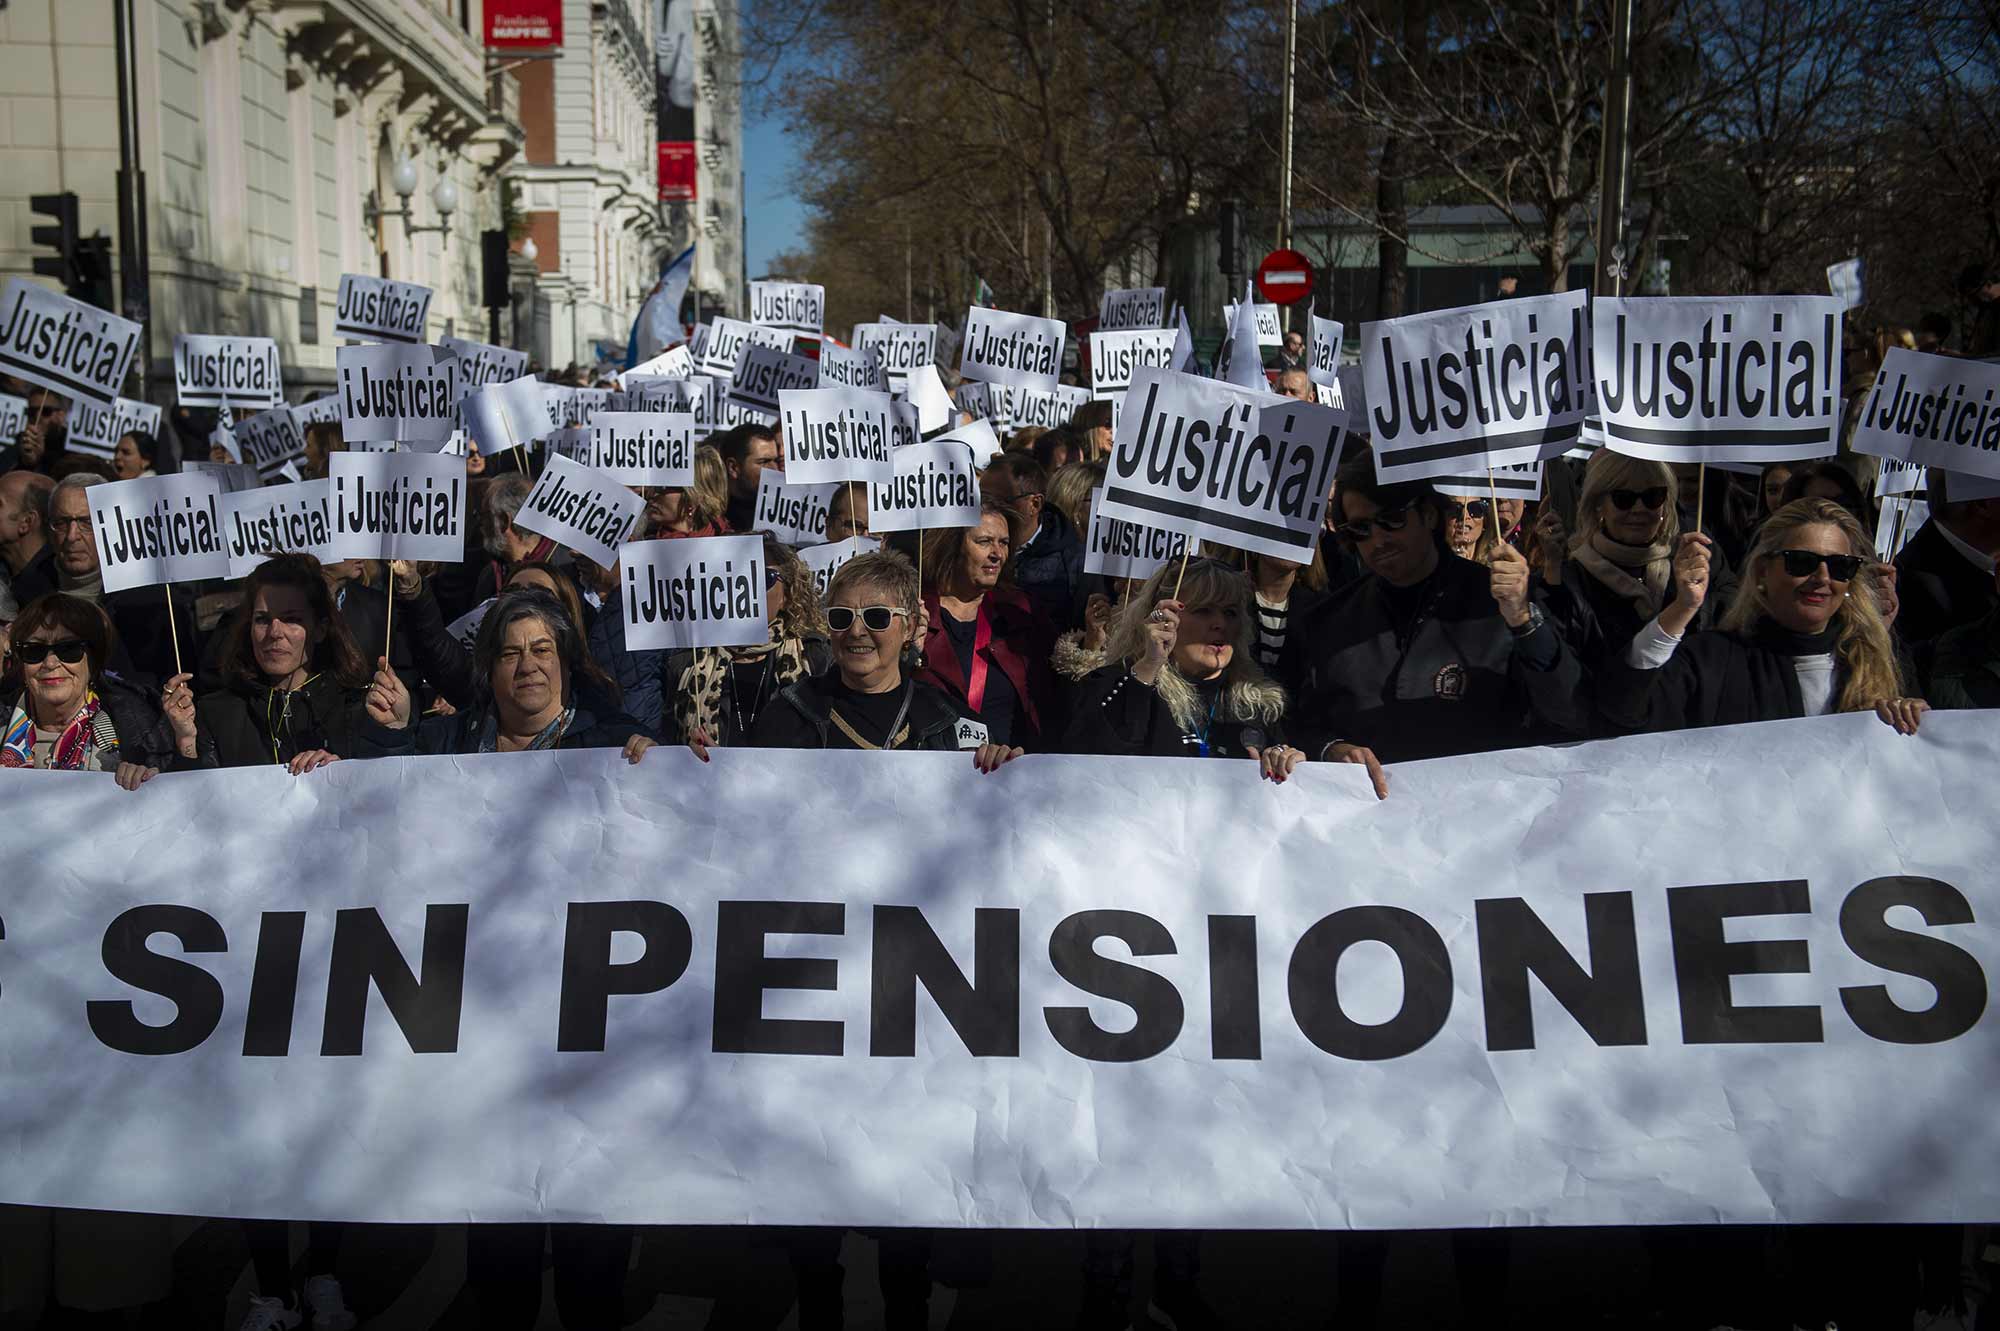 Abogados y procuradores volverán a reclamar pensiones dignas en una gran manifestación en Madrid. Foto: EuropaPress